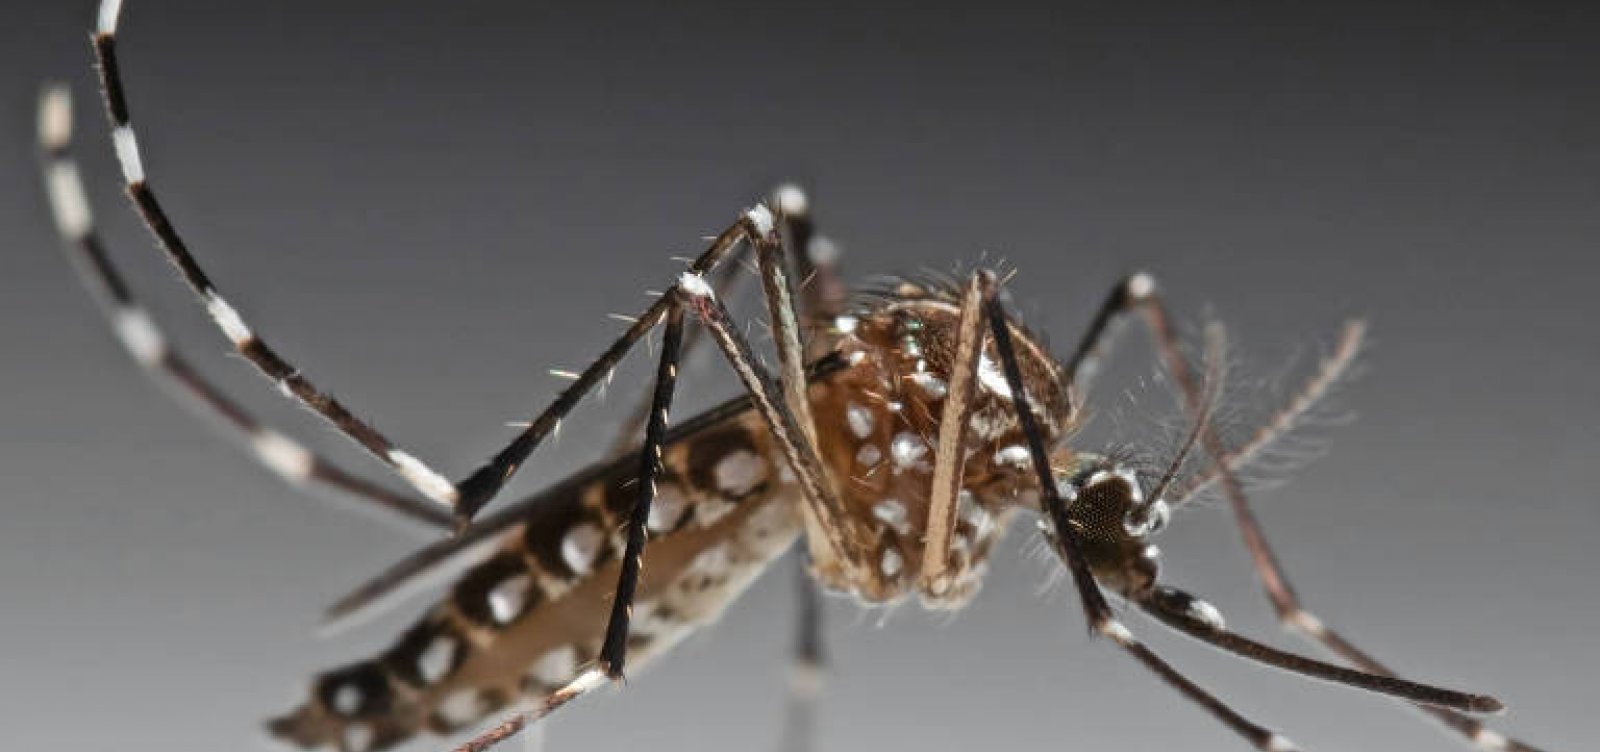 Governo quer reaproveitar inseticida para dengue com validade vencida